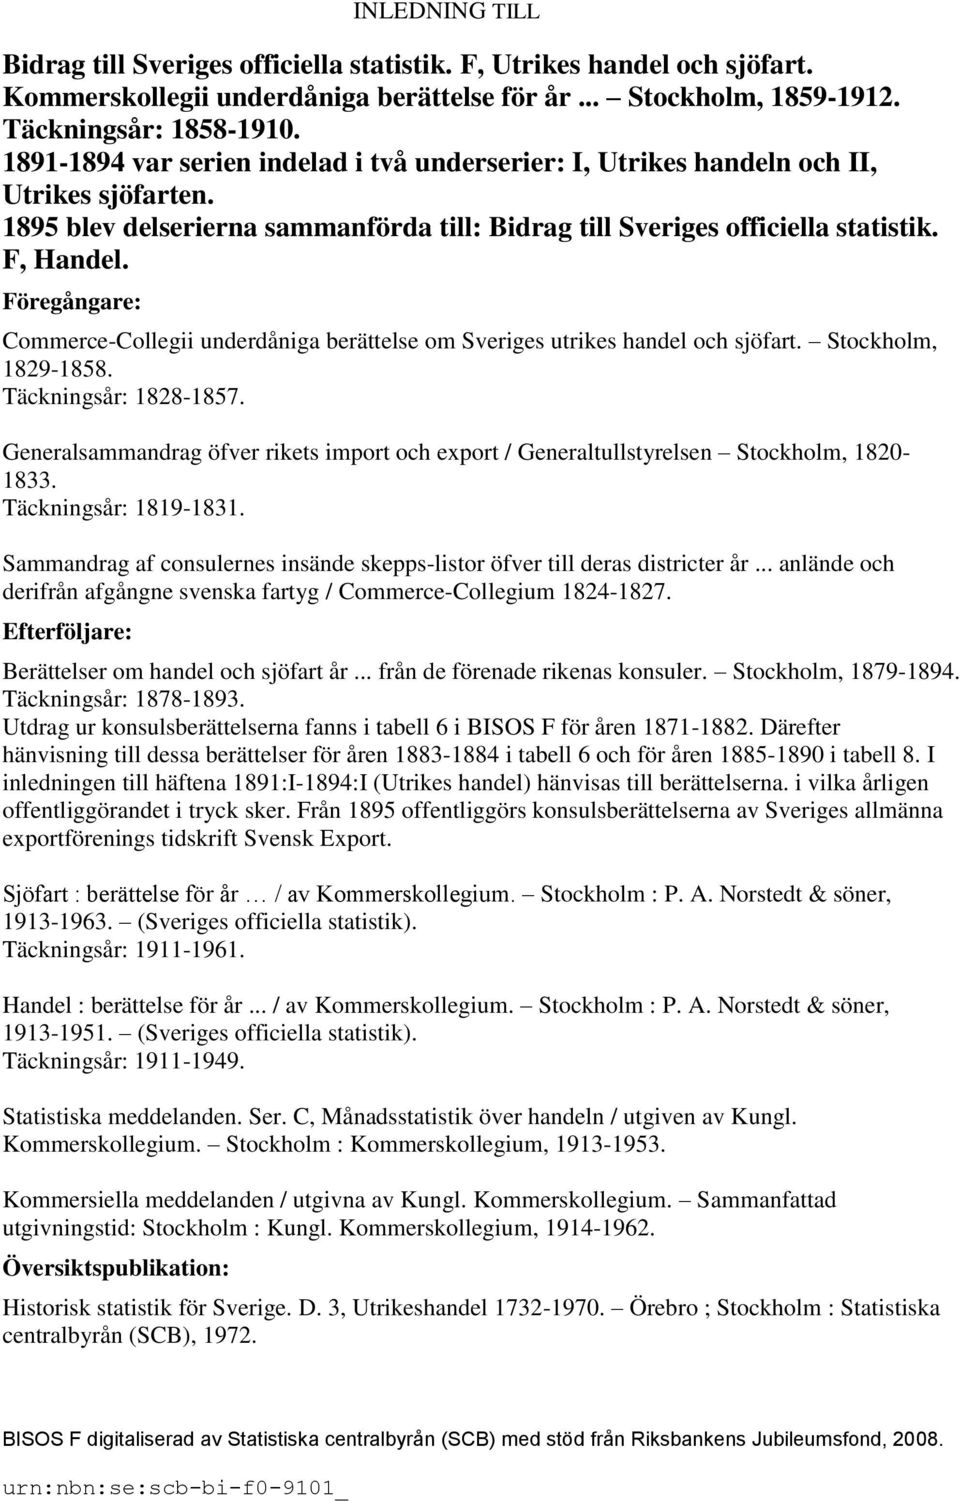 Föregångare: Commerce-Collegii underdåniga berättelse om Sveriges utrikes handel och sjöfart. Stockholm, 1829-1858. Täckningsår: 1828-1857.